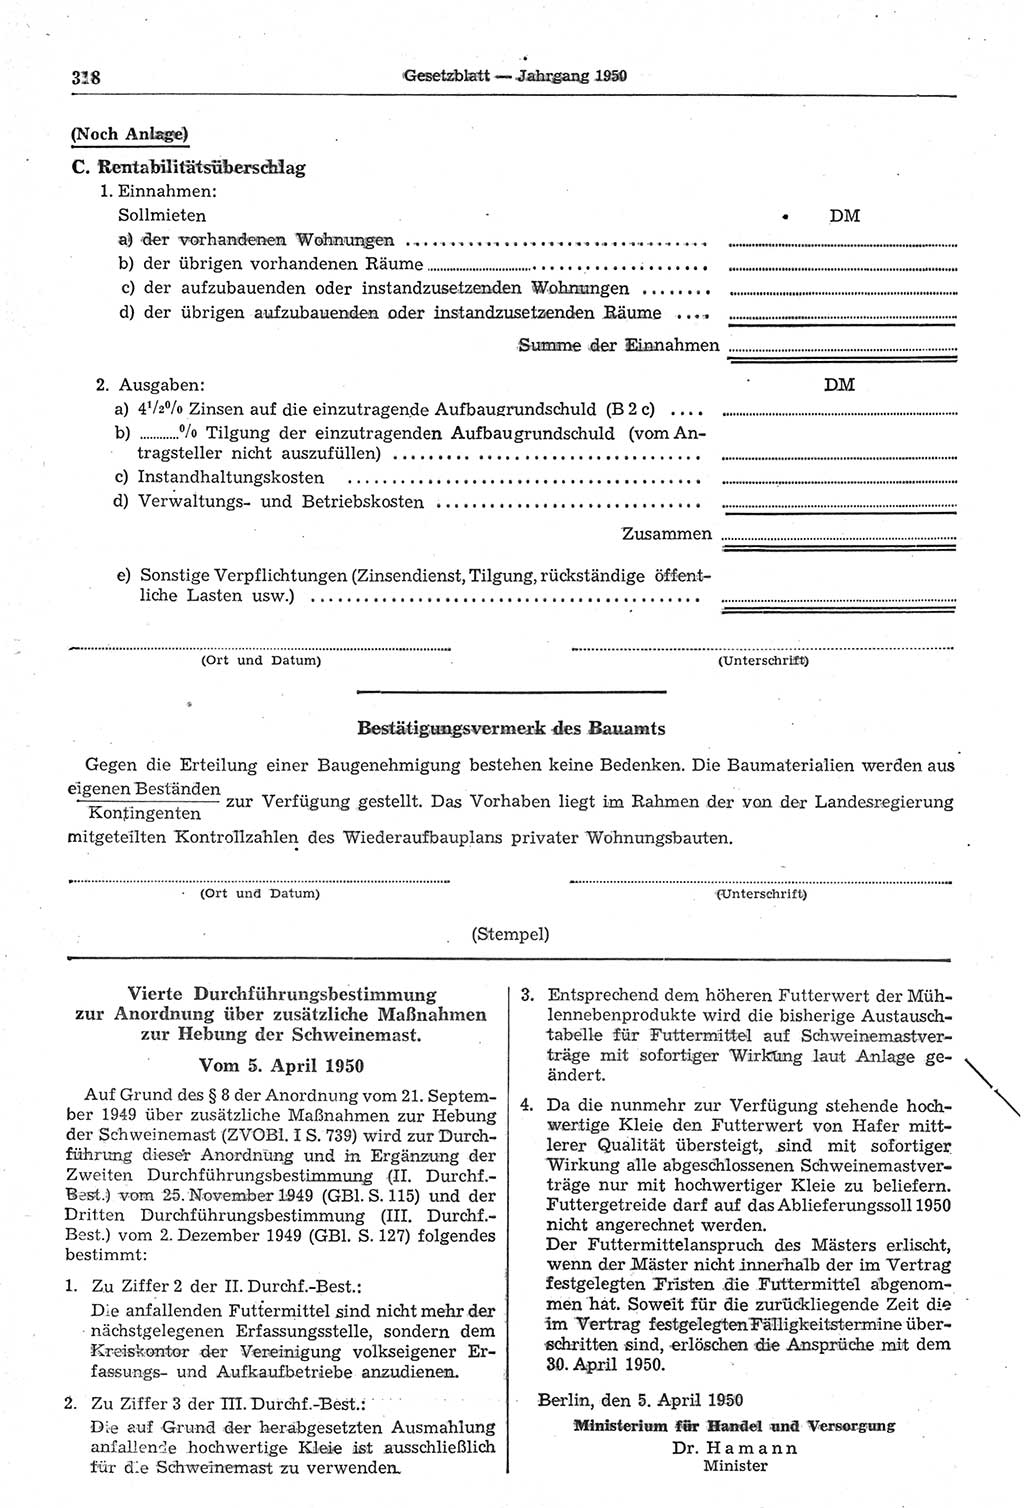 Gesetzblatt (GBl.) der Deutschen Demokratischen Republik (DDR) 1950, Seite 318 (GBl. DDR 1950, S. 318)